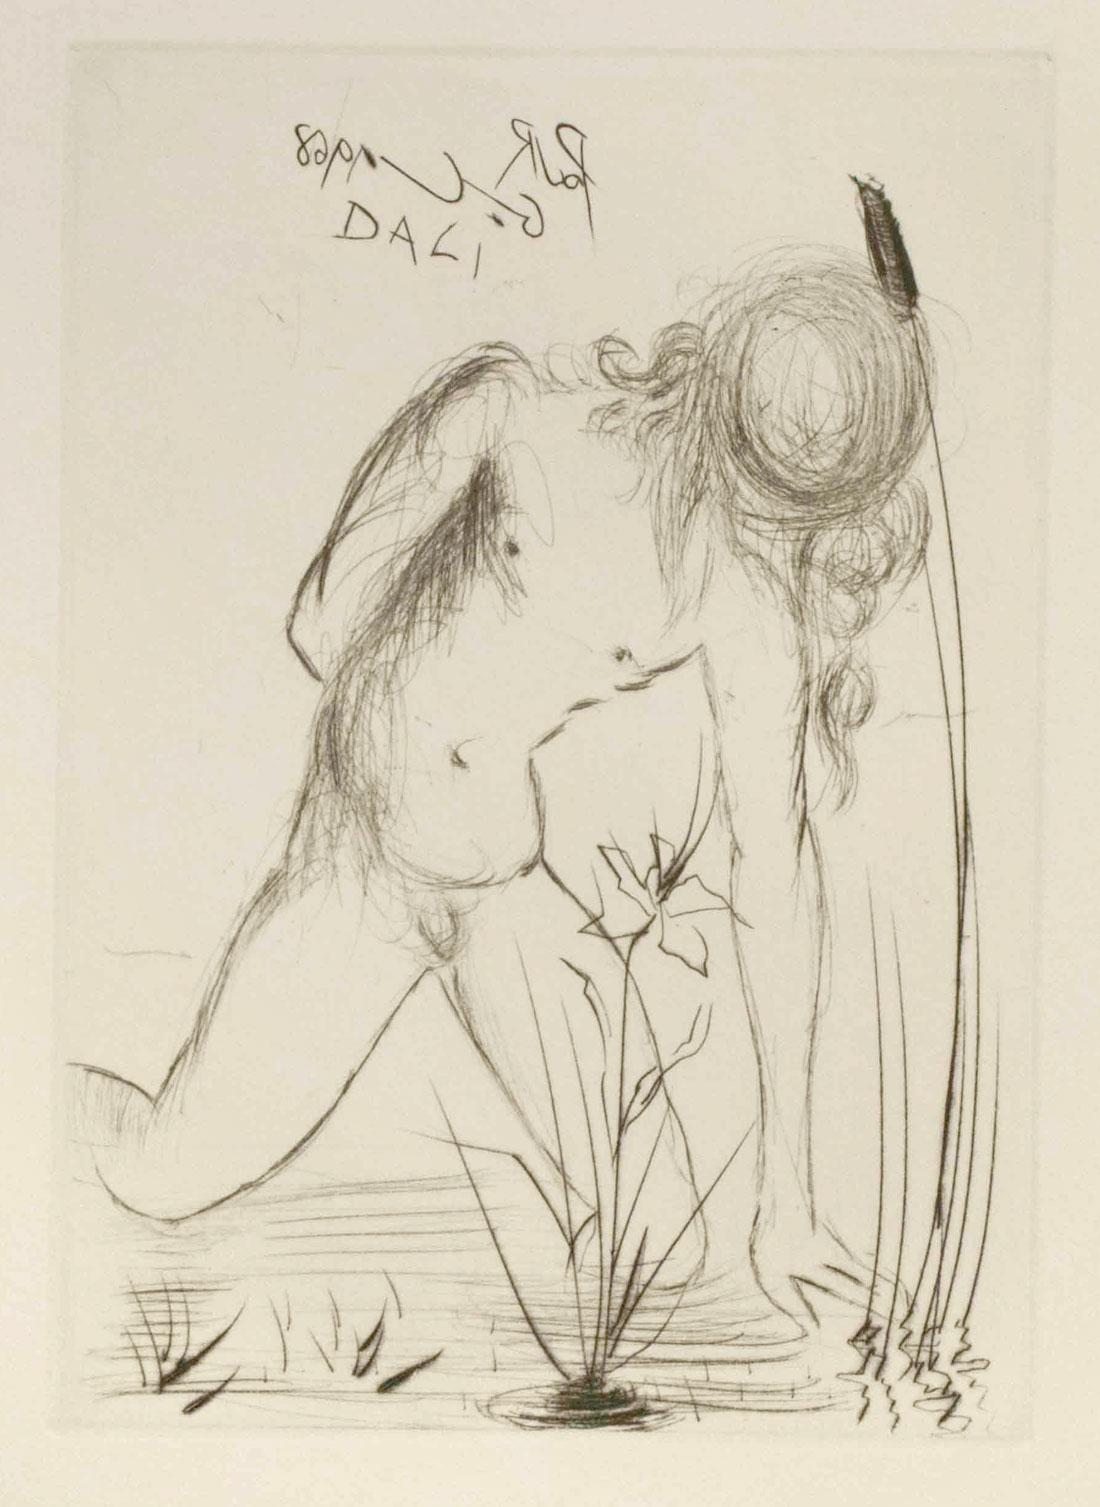 Narcisse des mers - Print de (after) Salvador Dali